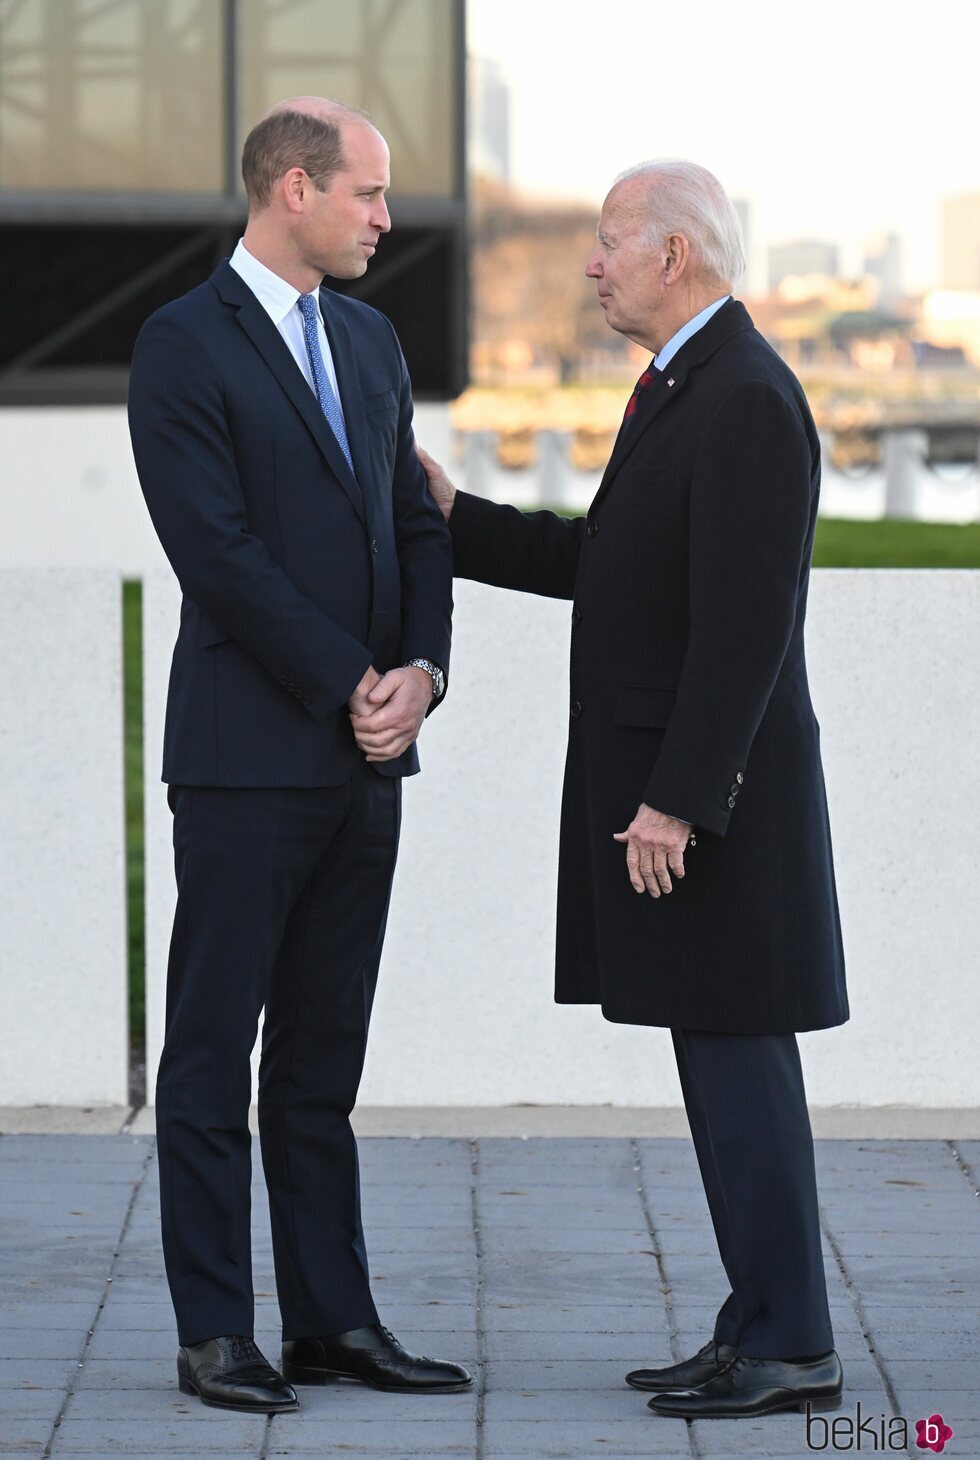 El Príncipe Guillermo y Joe Biden hablando muy cómplices en Boston